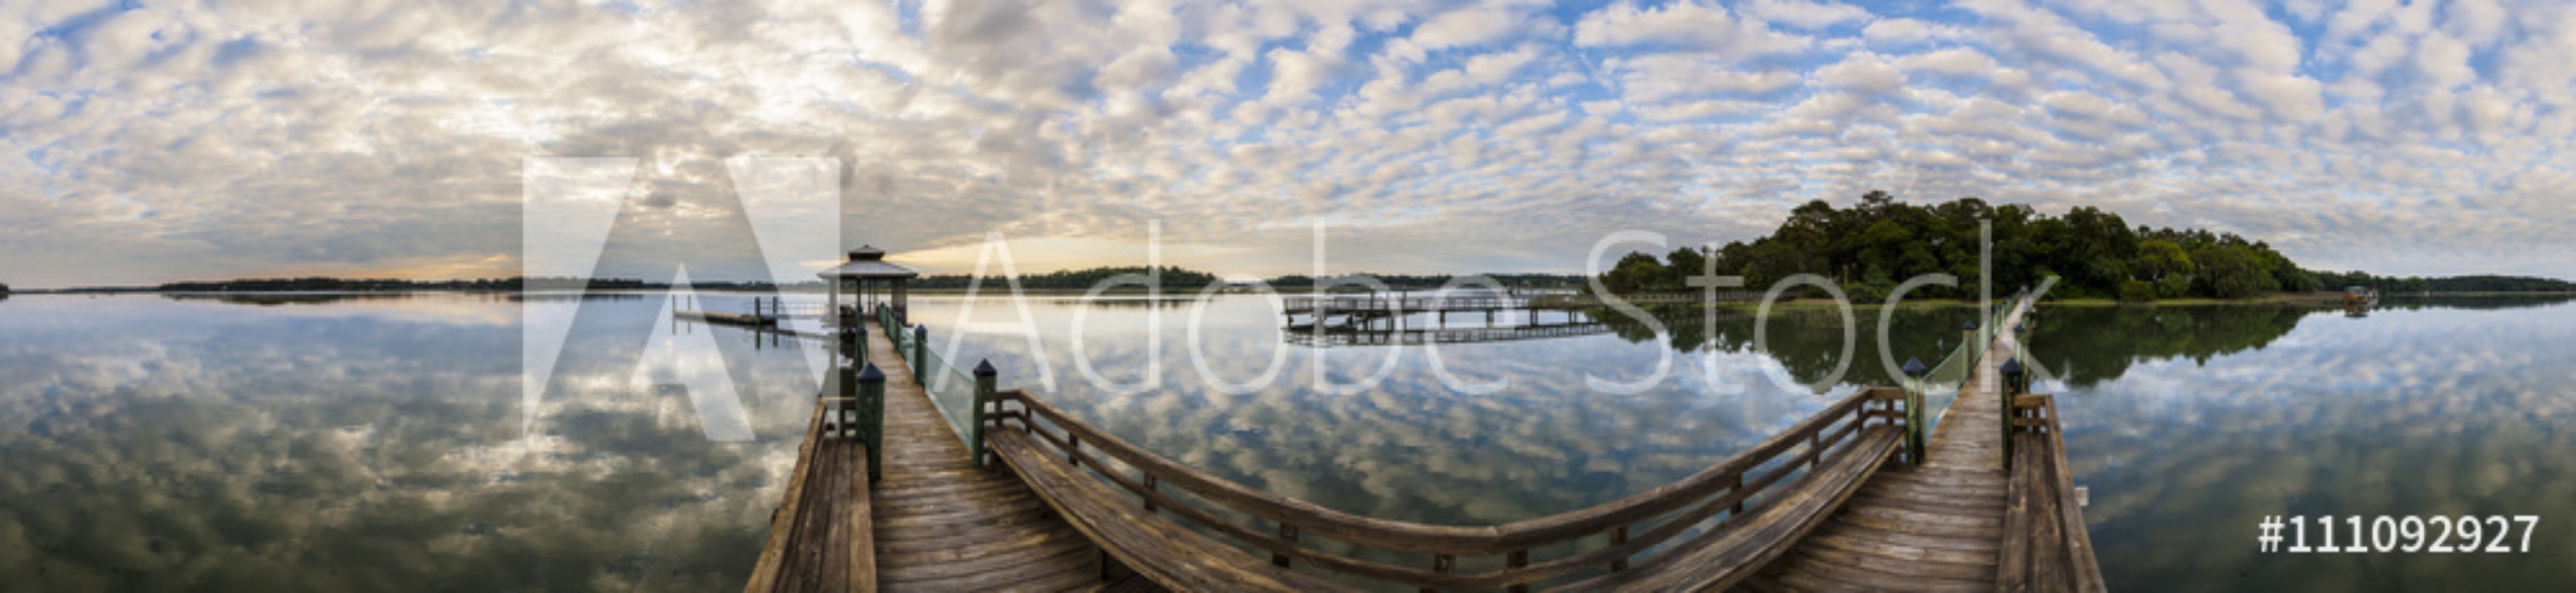 Image de 360 panorama of South Carolina